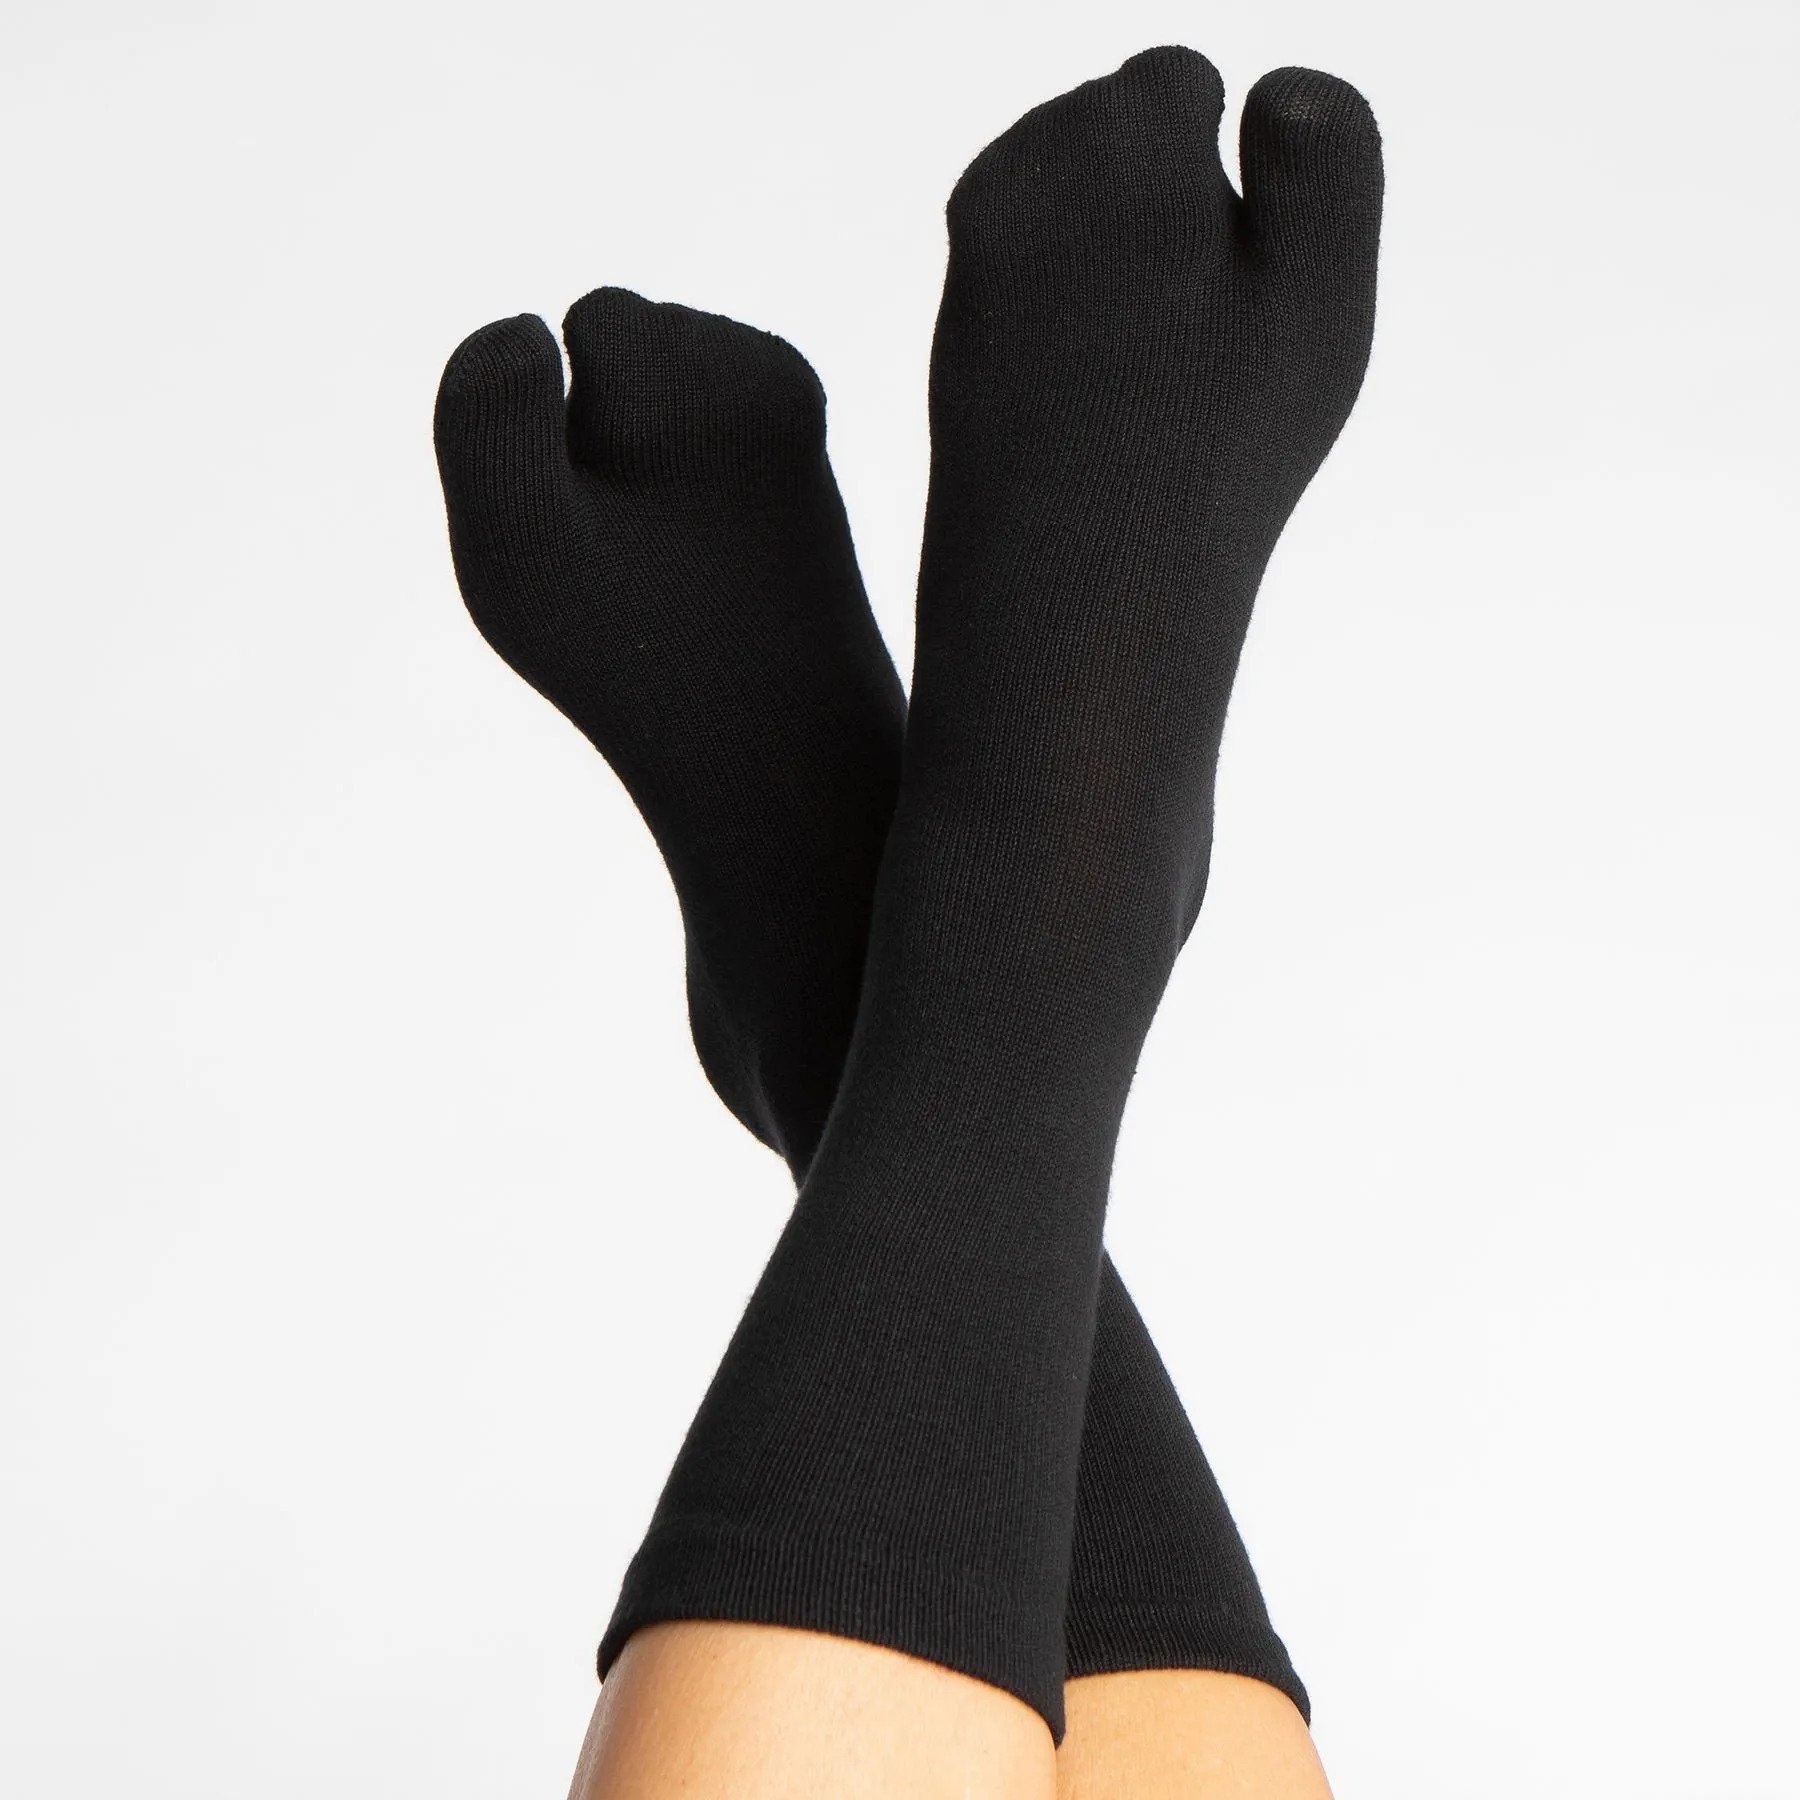 Hallufix ponožky s odděleným palcem